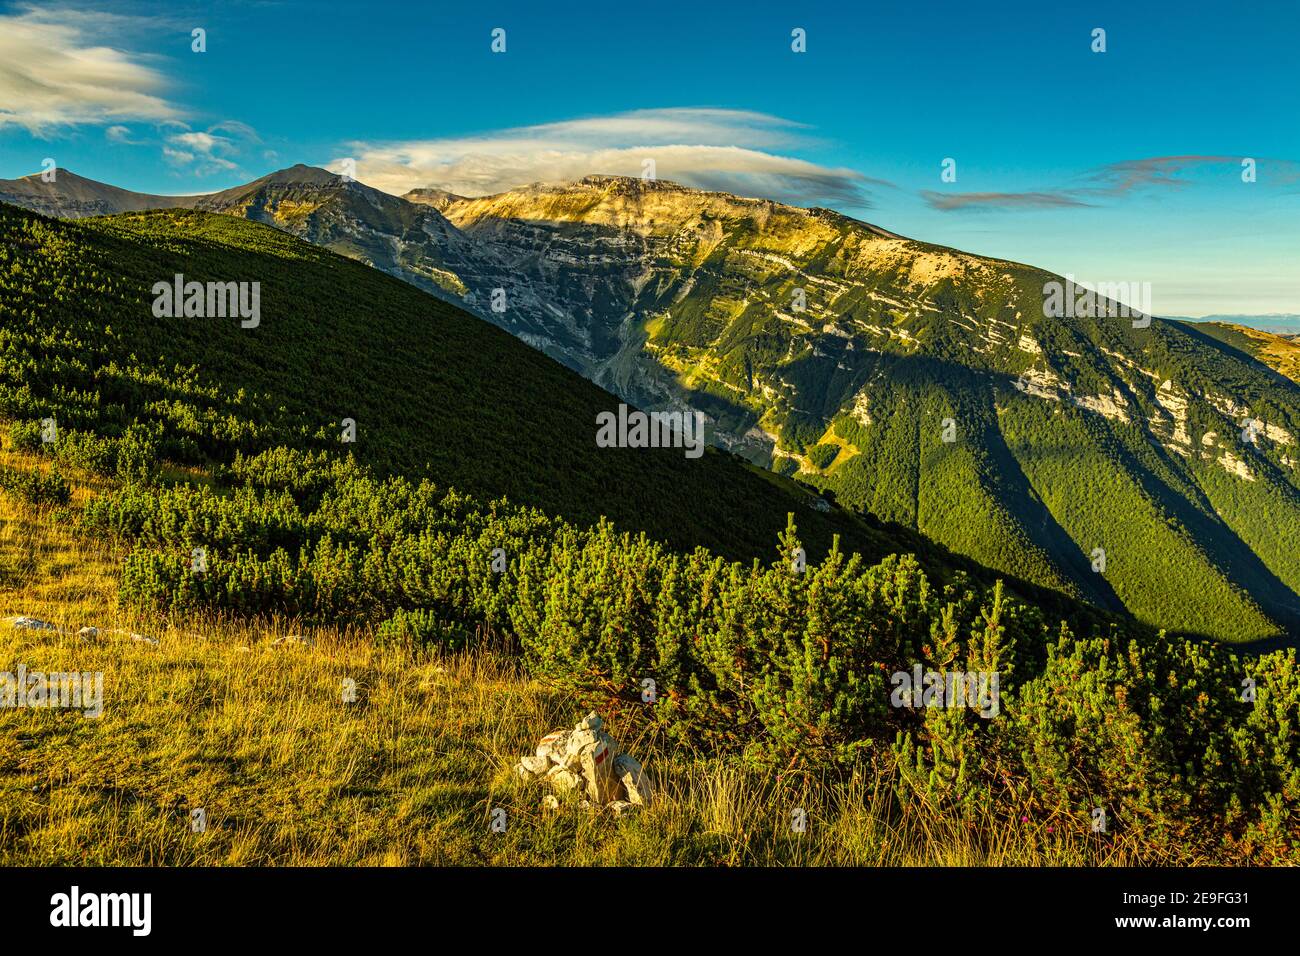 La catena montuosa della Maiella, le cime del Pesco Falcone, l'Antecima Ovest del Monte Acquaviva e il Monte Acquaviva. Parco Nazionale della Maiella. Foto Stock